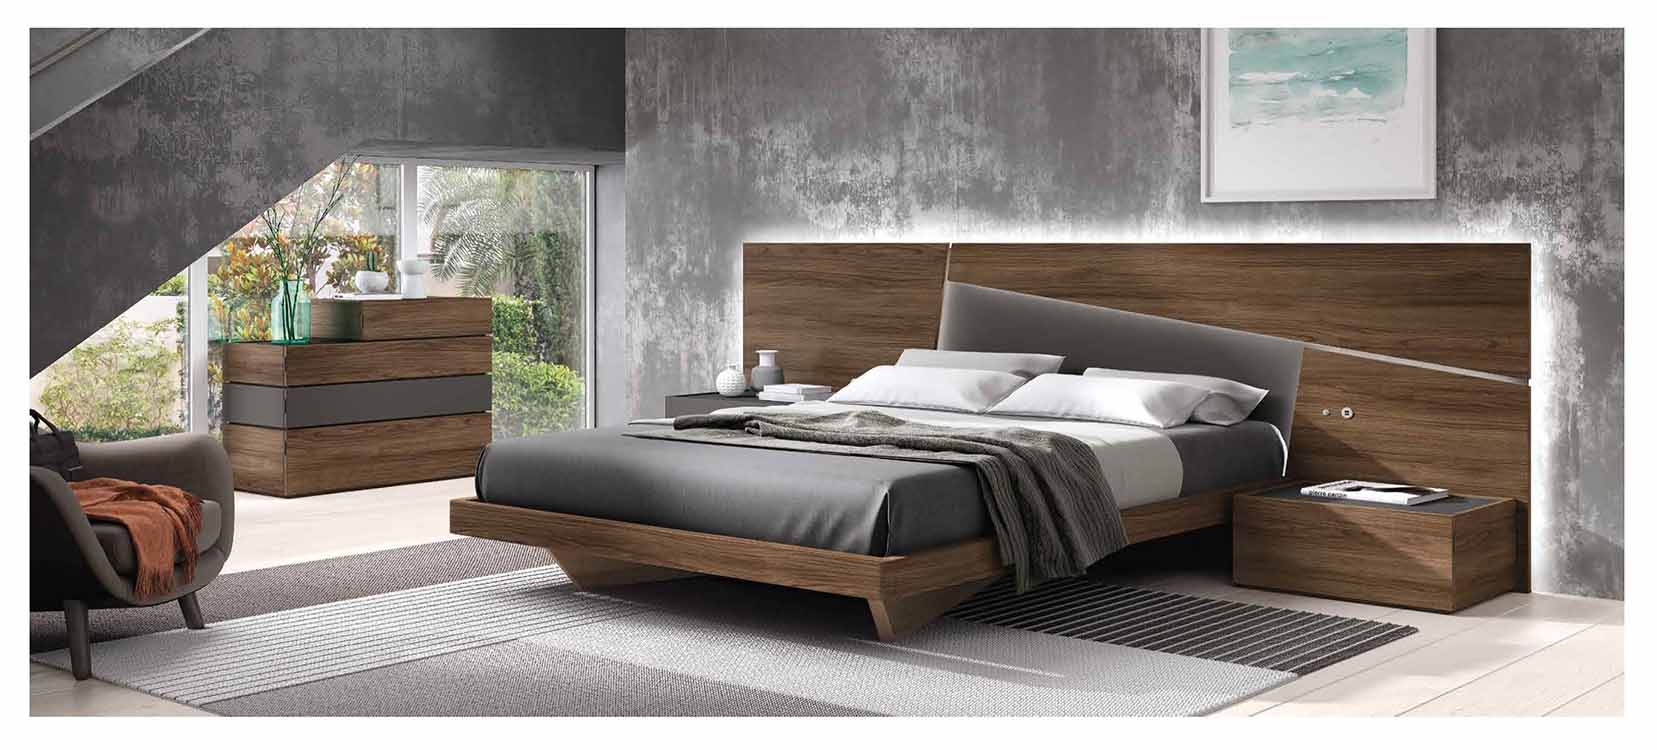 http://www.munozmuebles.net/nueva/catalogo/dormitorios1-2253-aro.jpg - Fotos con 
muebles de madera de caoba